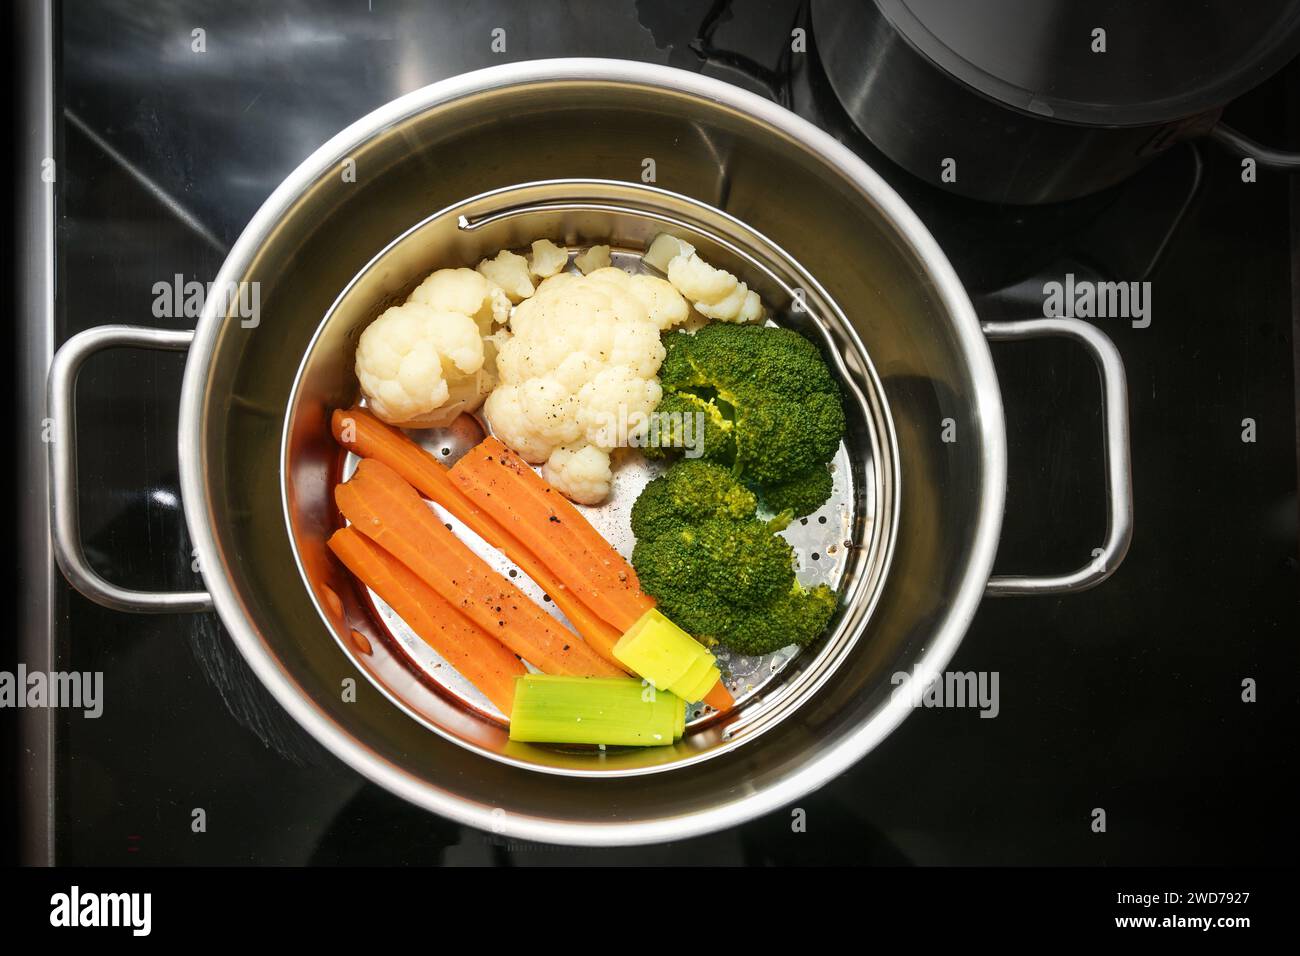 Gemischtes Gemüse in einem Korb mit Dampfgarer in einem Edelstahl-Topf, die gesunde Kochtechnik Konservierung von Mineralien, Vitaminen und Geschmack, Blick von oben Stockfoto